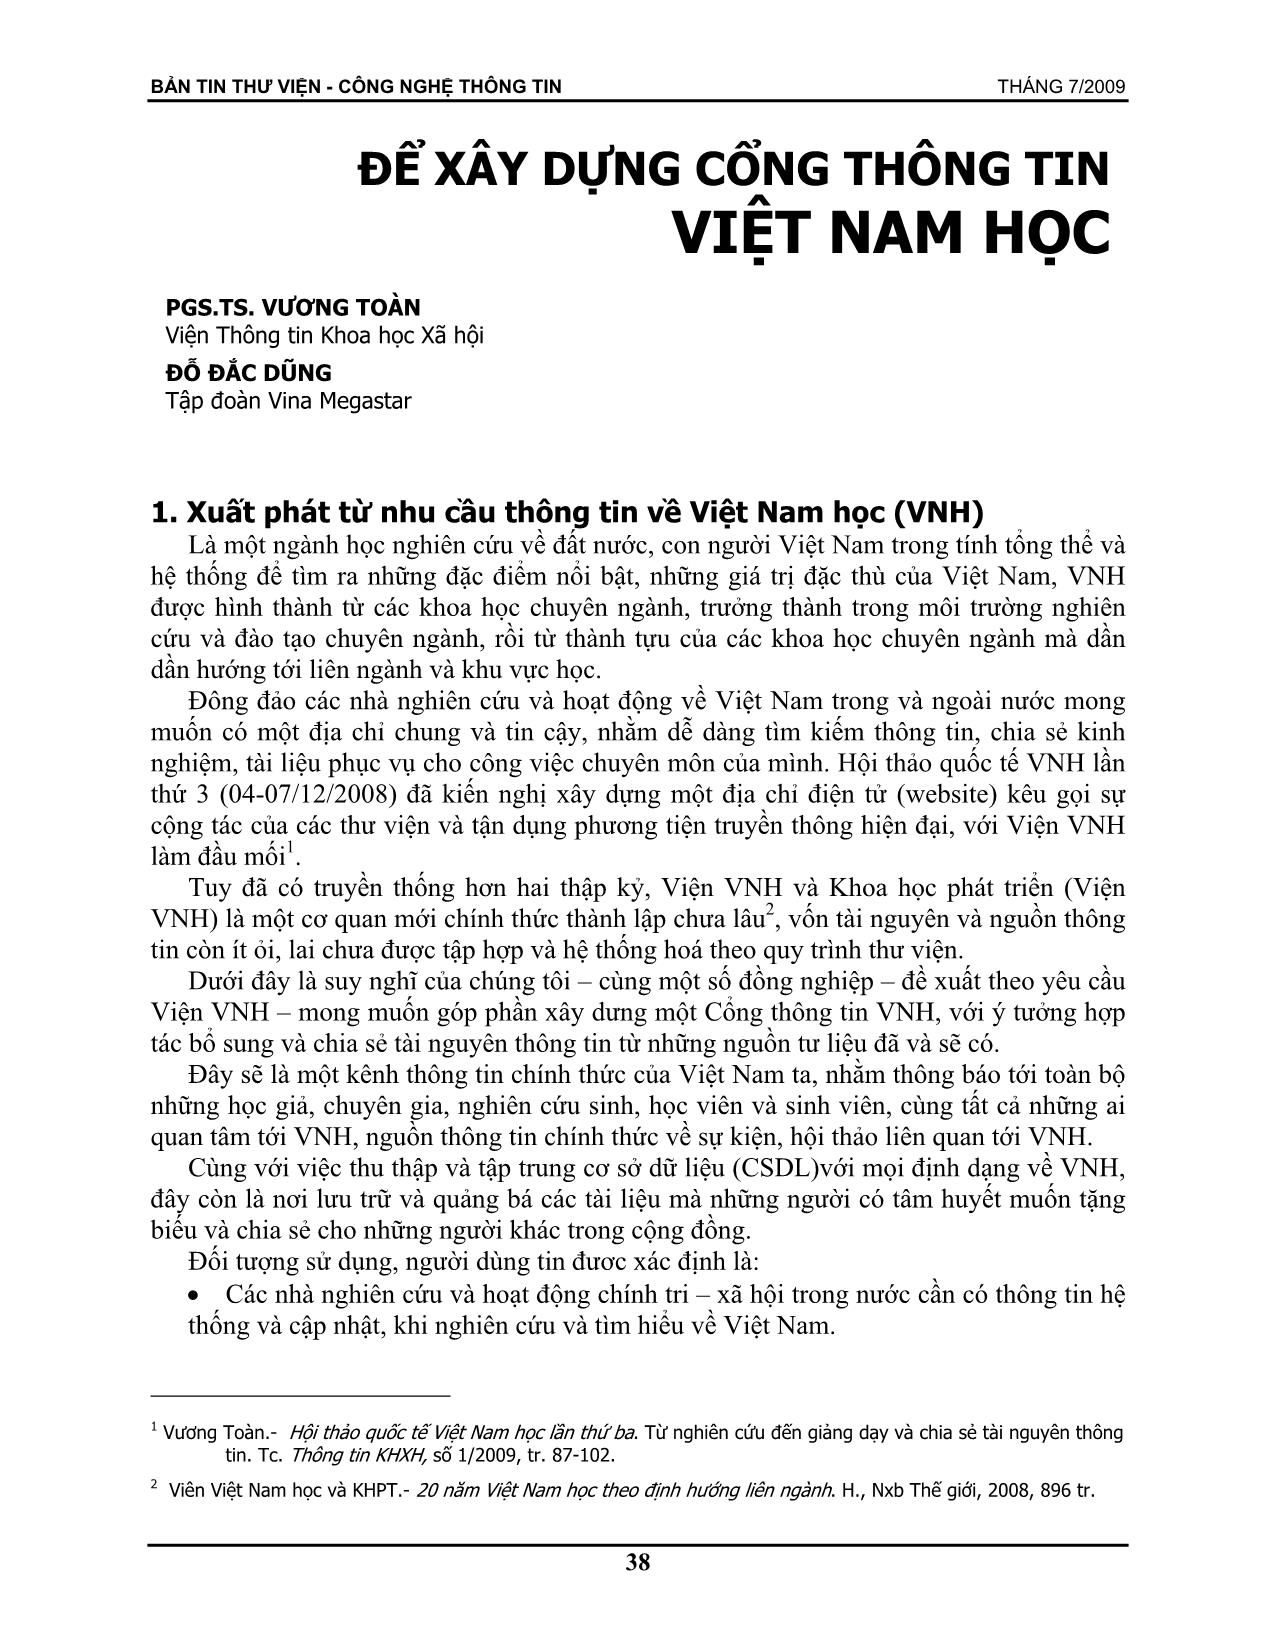 Để xây dựng cổng thông tin Việt Nam học trang 1